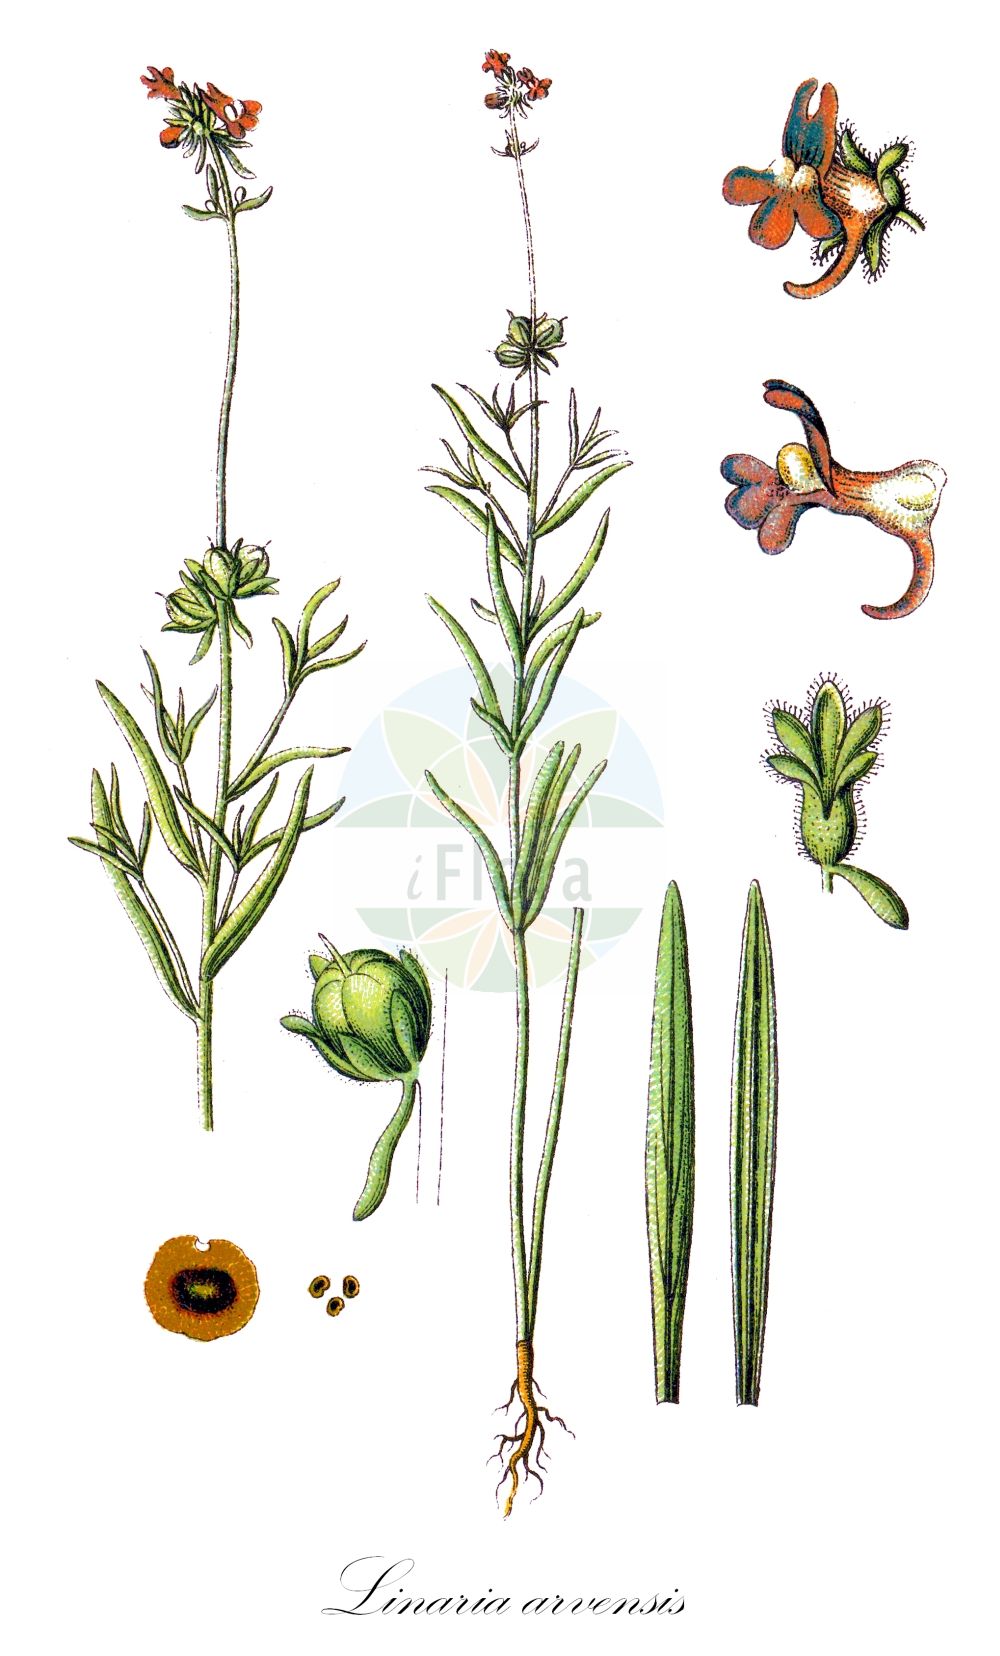 Historische Abbildung von Linaria arvensis (Acker-Leinkraut - Corn Toadflax). Das Bild zeigt Blatt, Bluete, Frucht und Same. ---- Historical Drawing of Linaria arvensis (Acker-Leinkraut - Corn Toadflax). The image is showing leaf, flower, fruit and seed.(Linaria arvensis,Acker-Leinkraut,Corn Toadflax,Antirrhinum arvense,Linaria arvensis,Linaria arvensis (L.) Desf.,Linaria arvensis subsp. eu-arvensis,Acker-Leinkraut,Corn Toadflax,Field Toadflax,Linaria,Leinkraut,Toadflax,Plantaginaceae,Wegerichgewächse,Plantain family,Blatt,Bluete,Frucht,Same,leaf,flower,fruit,seed,Sturm (1796f))